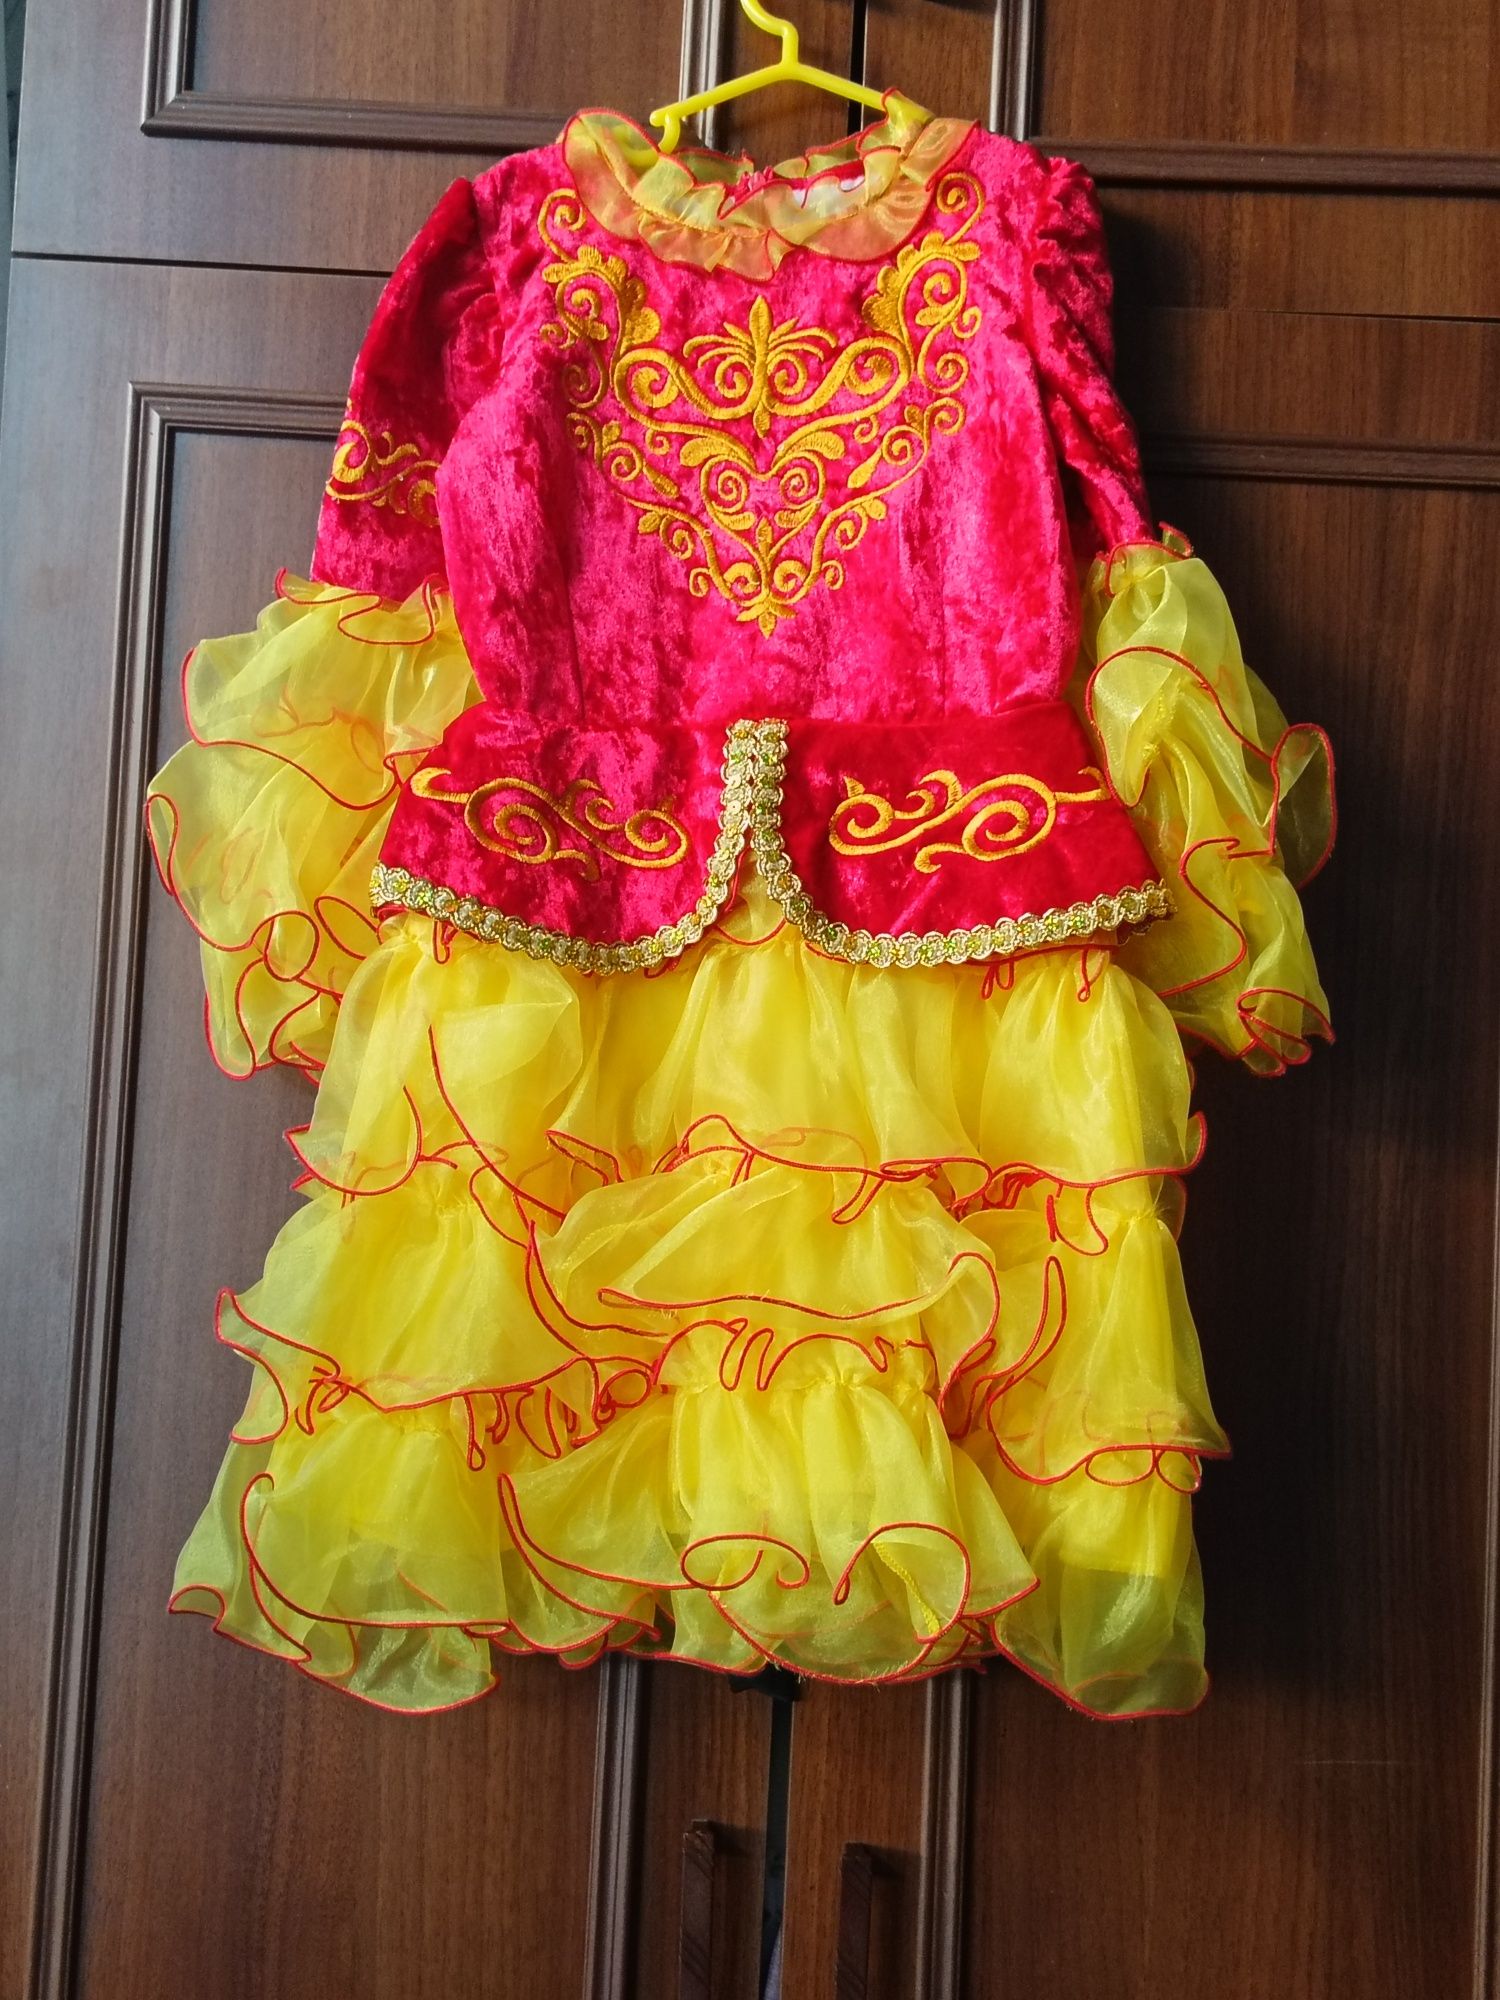 Казахский национальный костюм.